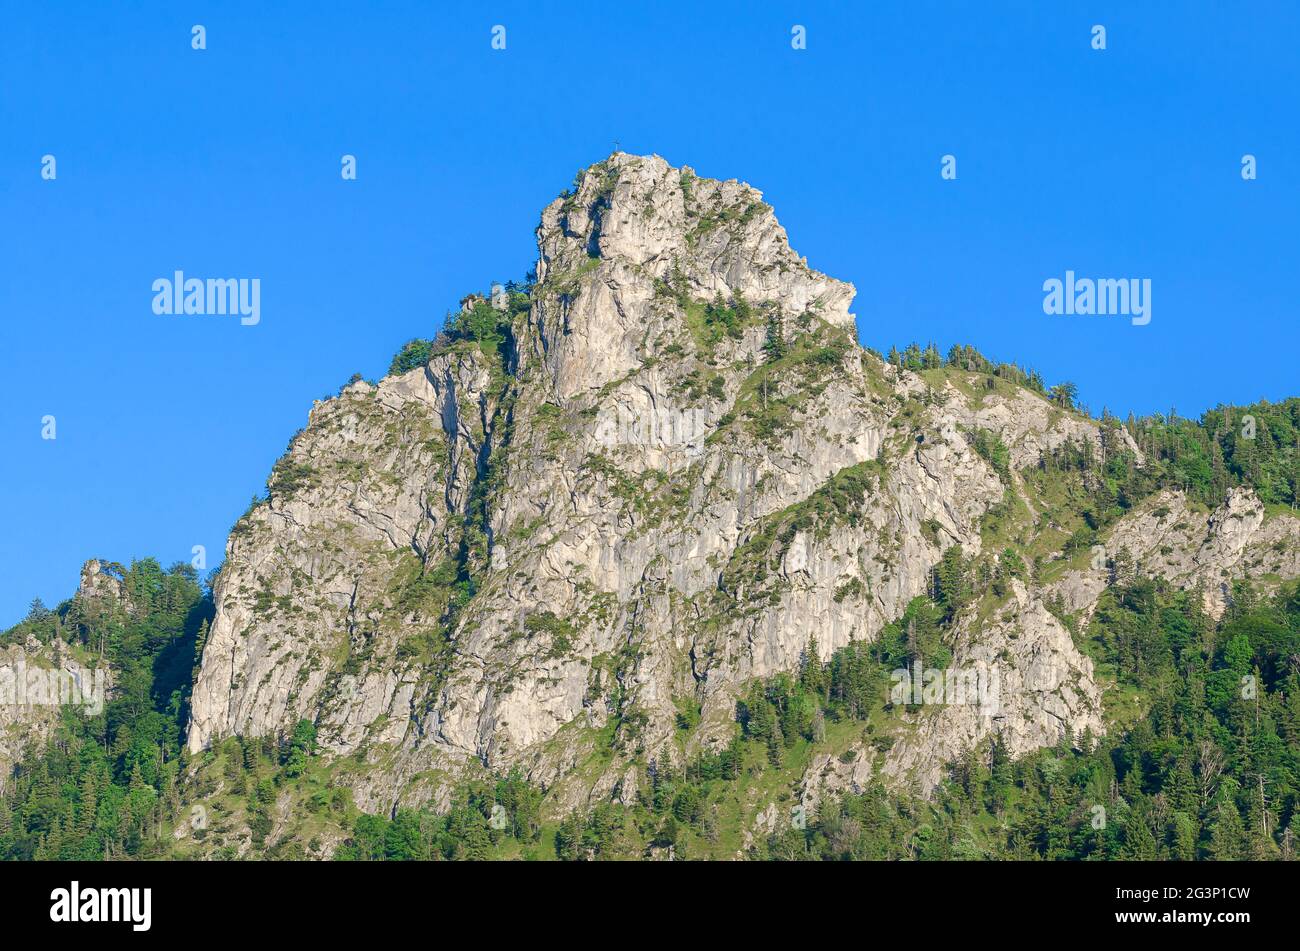 Formation de roches dentelées Nockstein à Salzbourg, Autriche, Europe. Appartient à Gaisberg, Hausberg de Salzbourg, les contreforts des Alpes calcaires du Nord. Banque D'Images